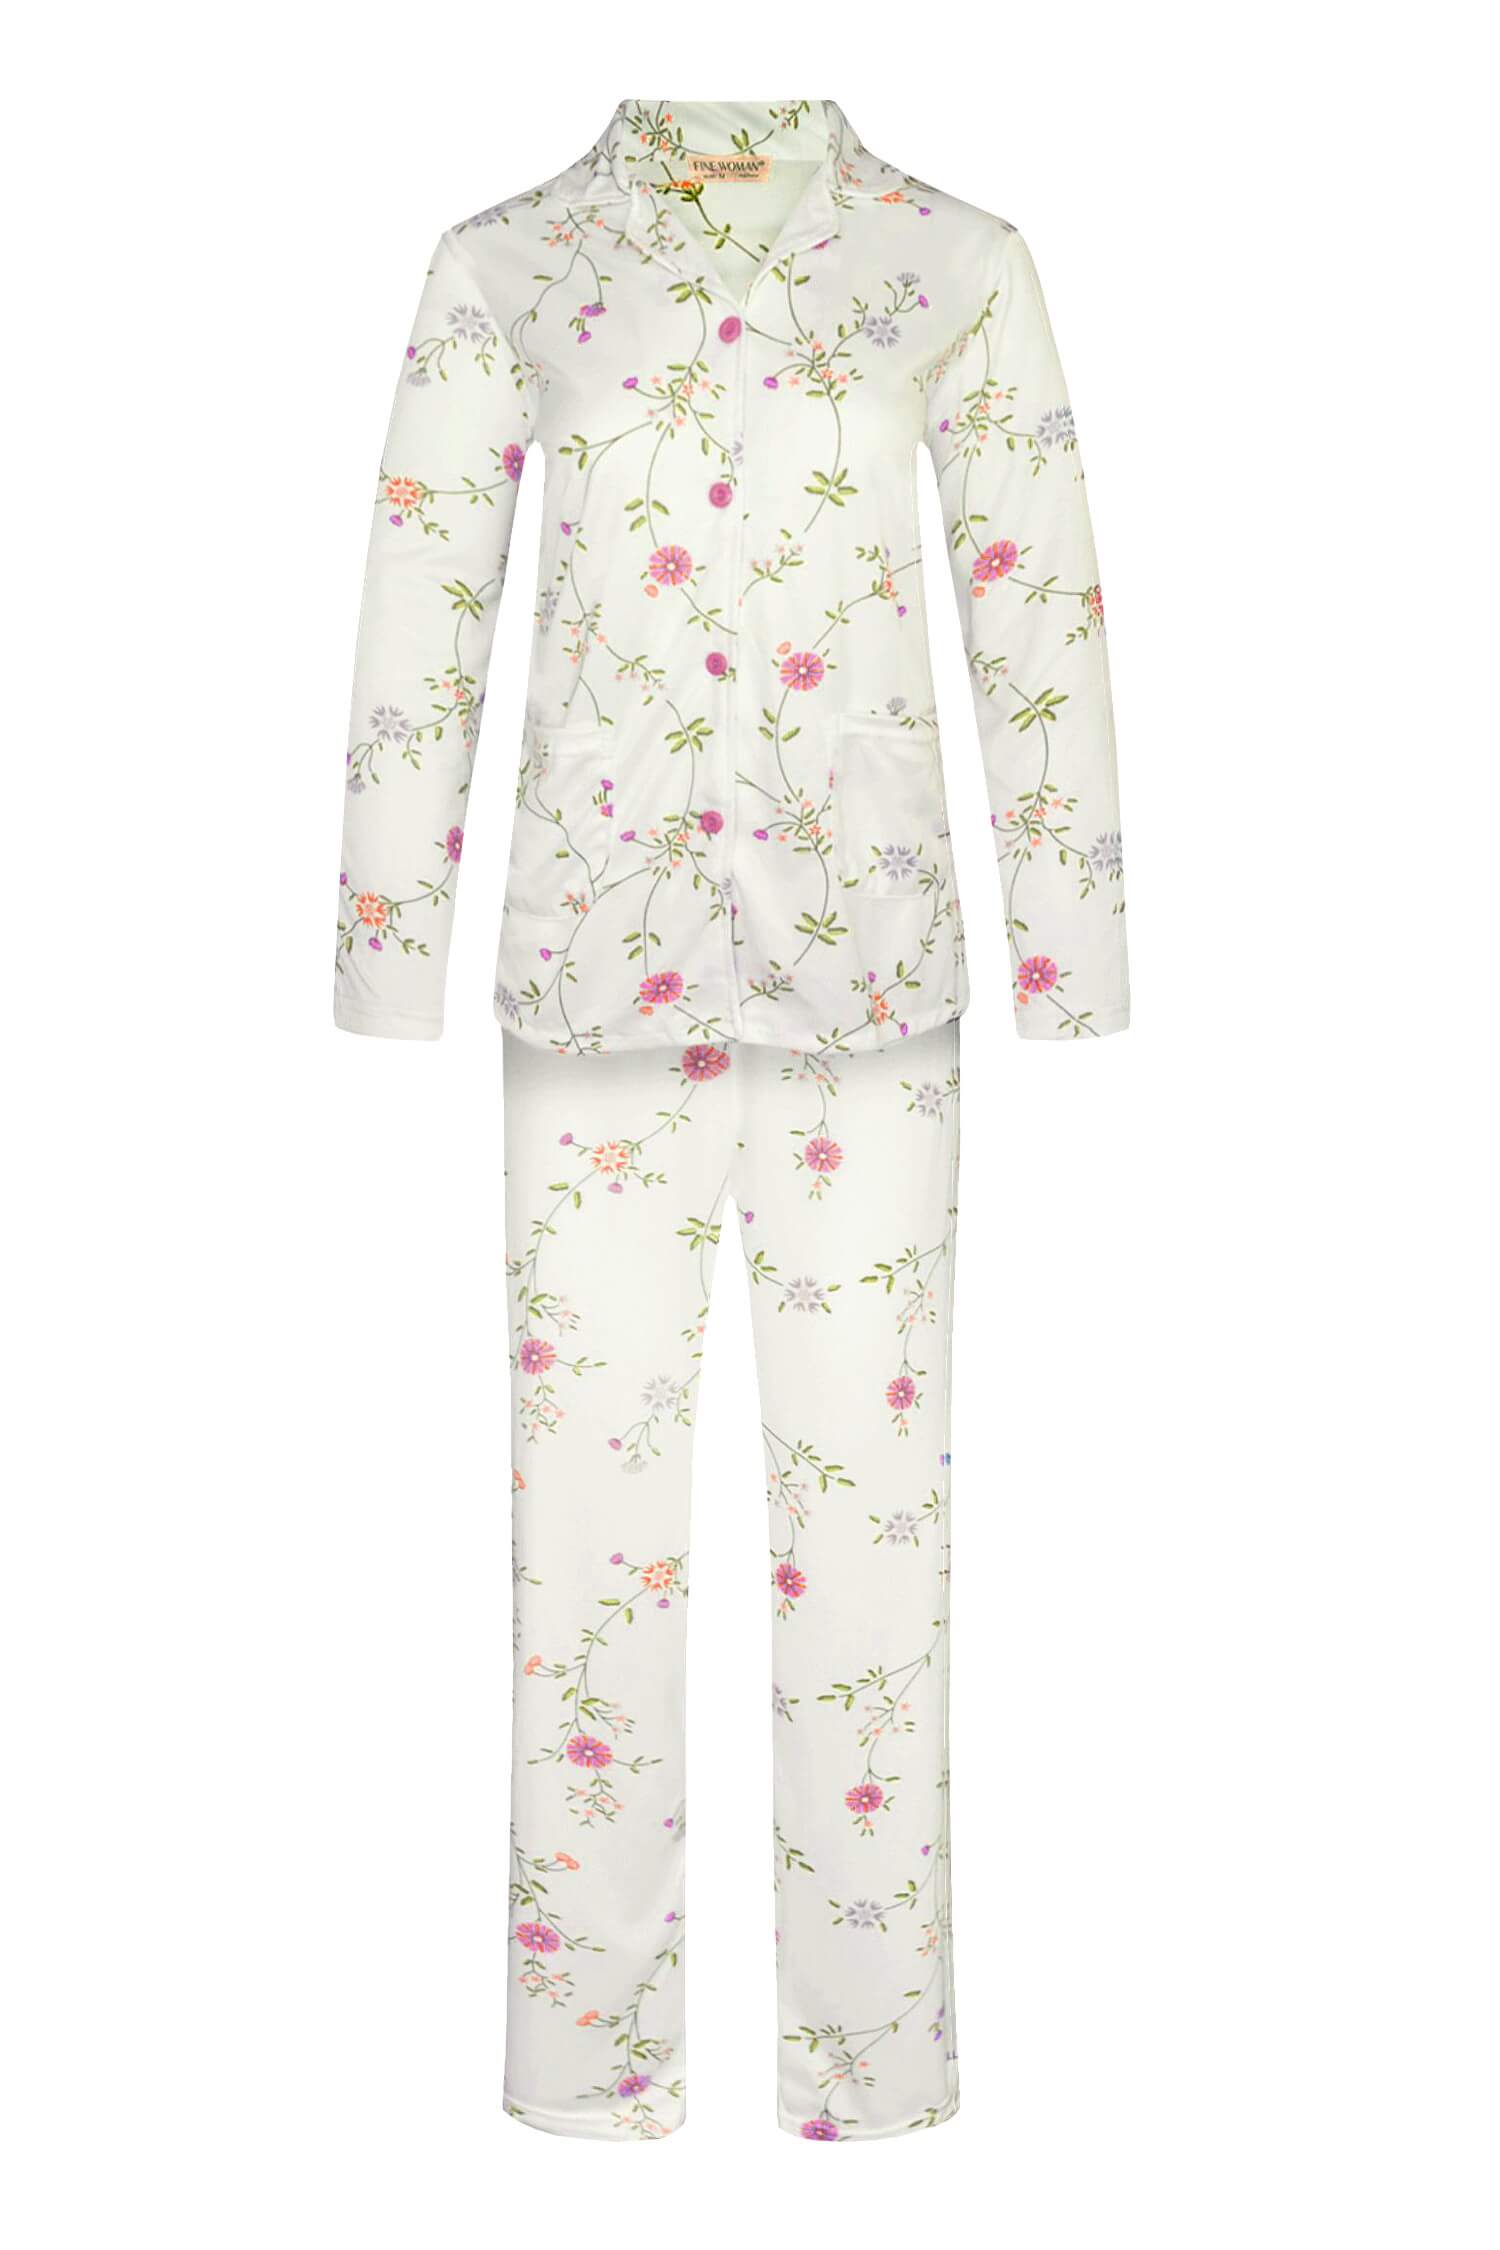 Lidka dámské pyžamo s dlouhým rukávem 2303 XL růžová